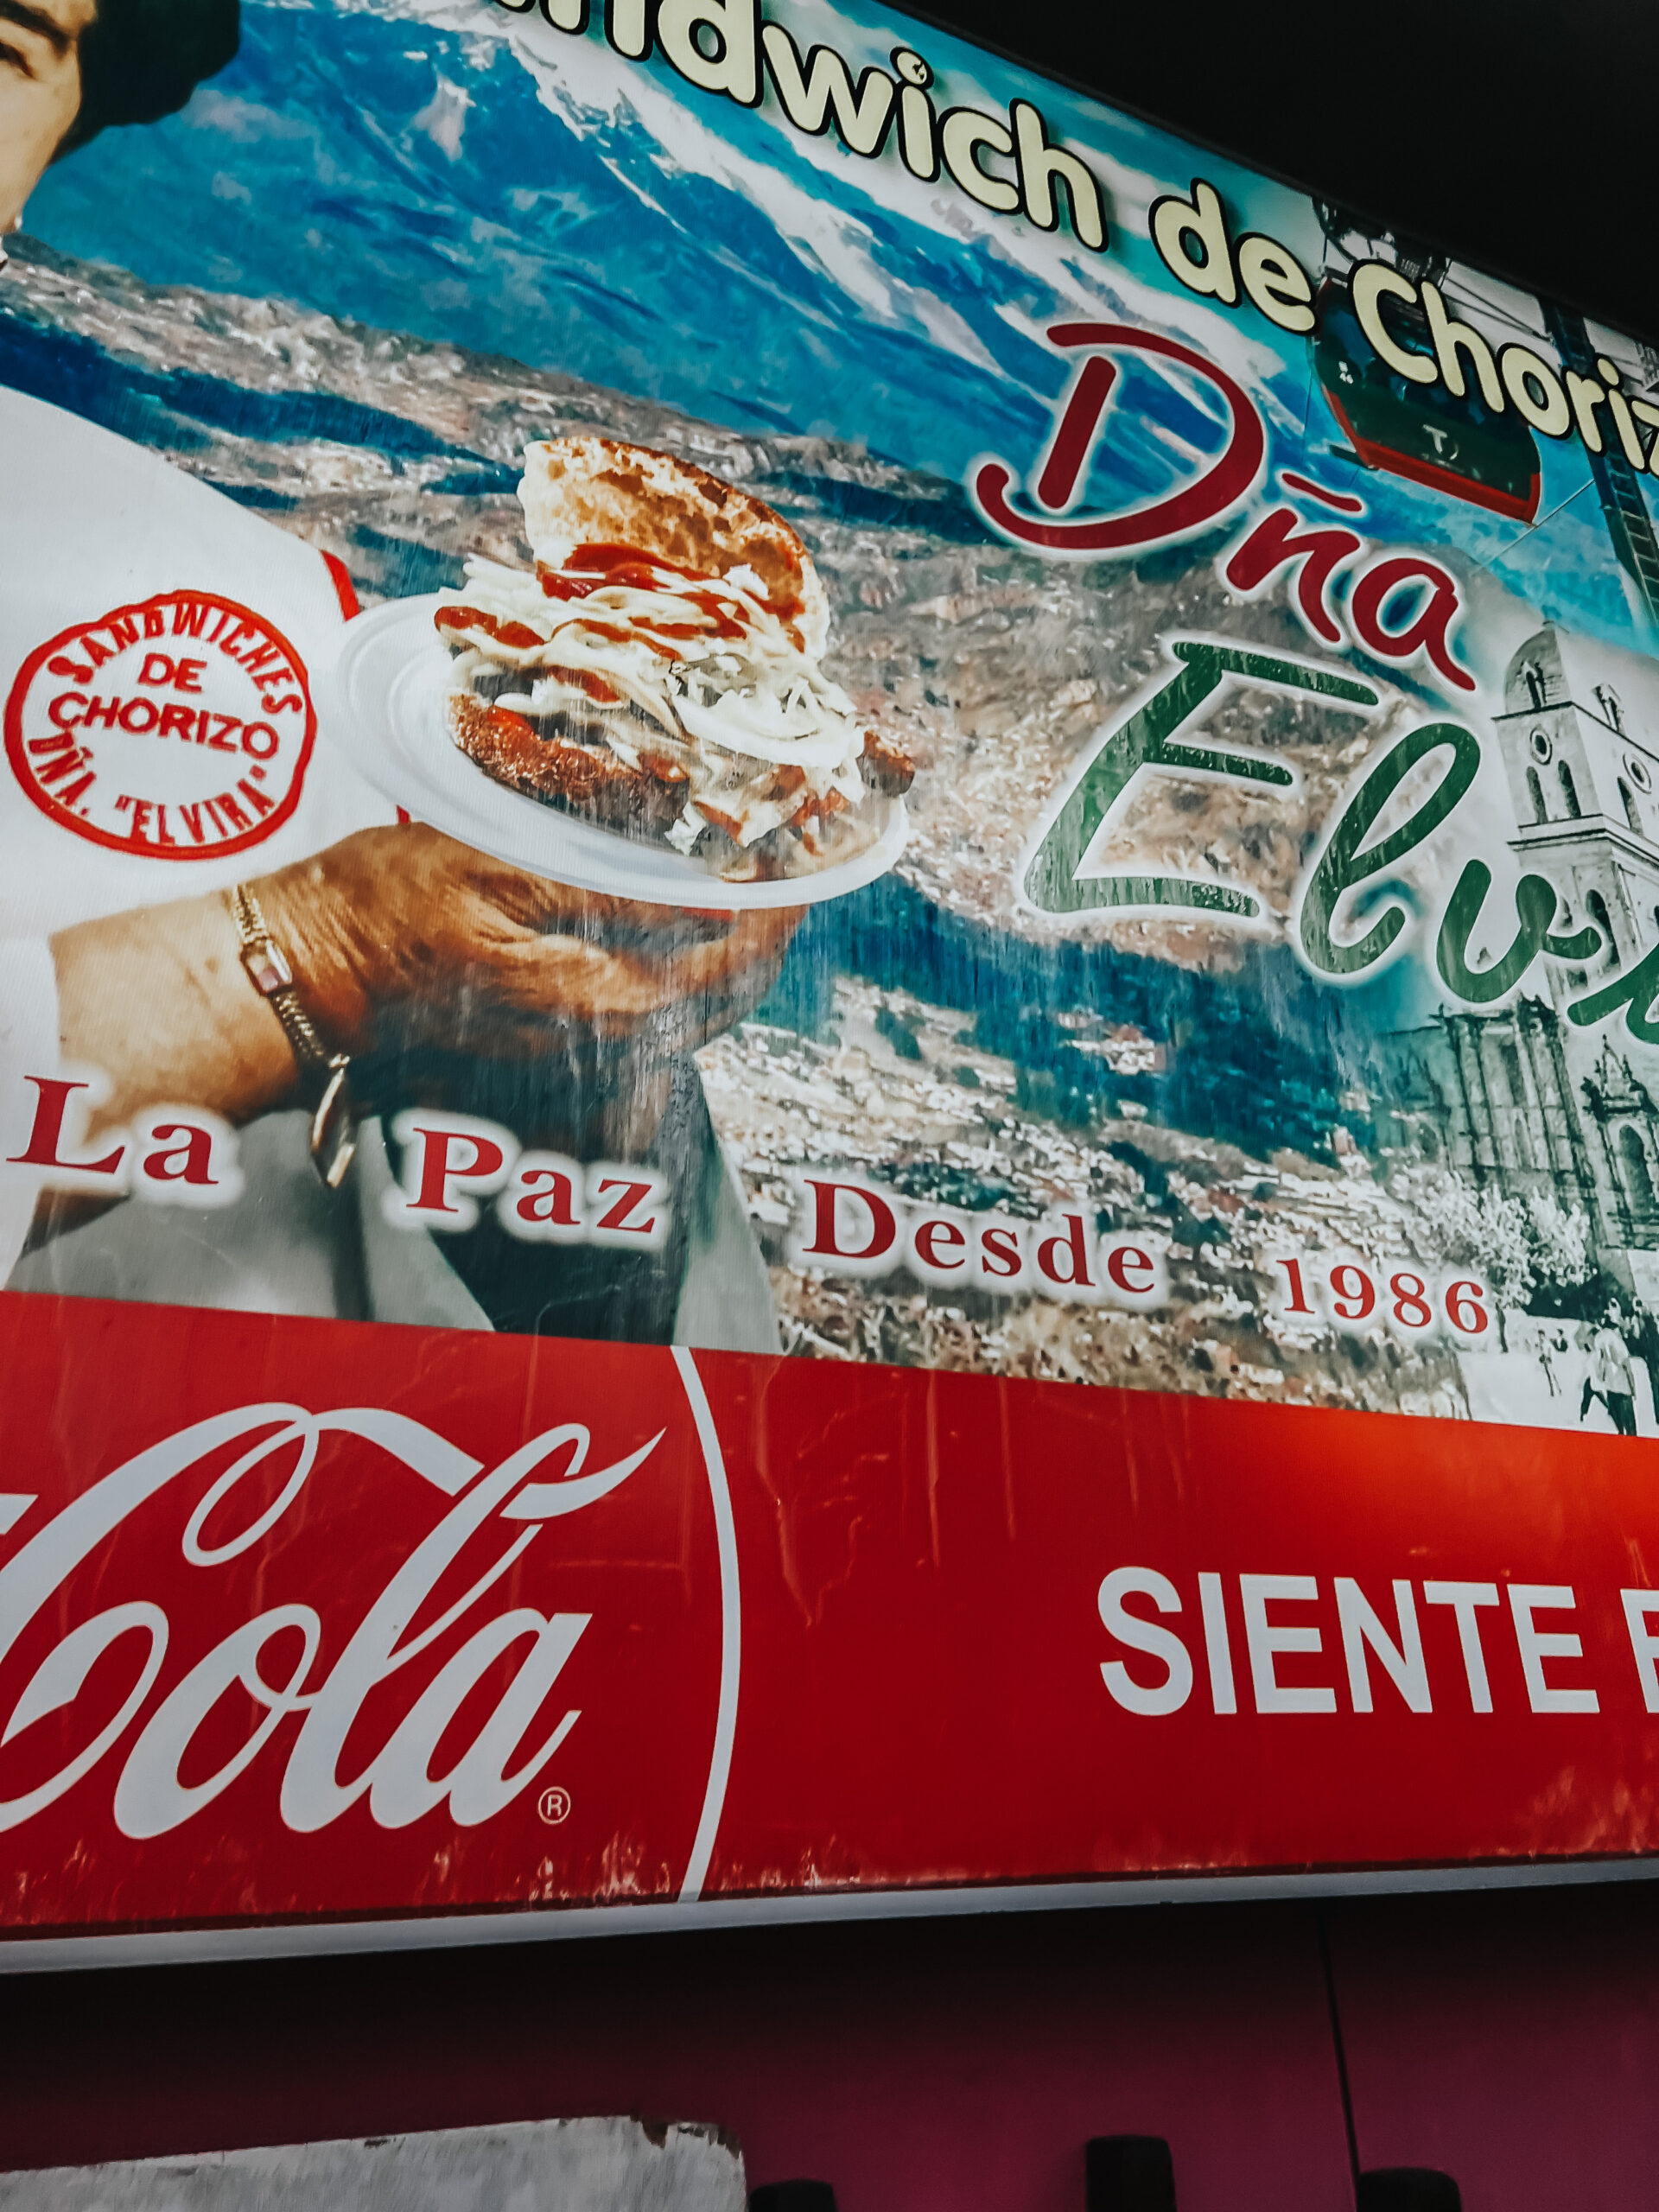 Food tour of La Paz